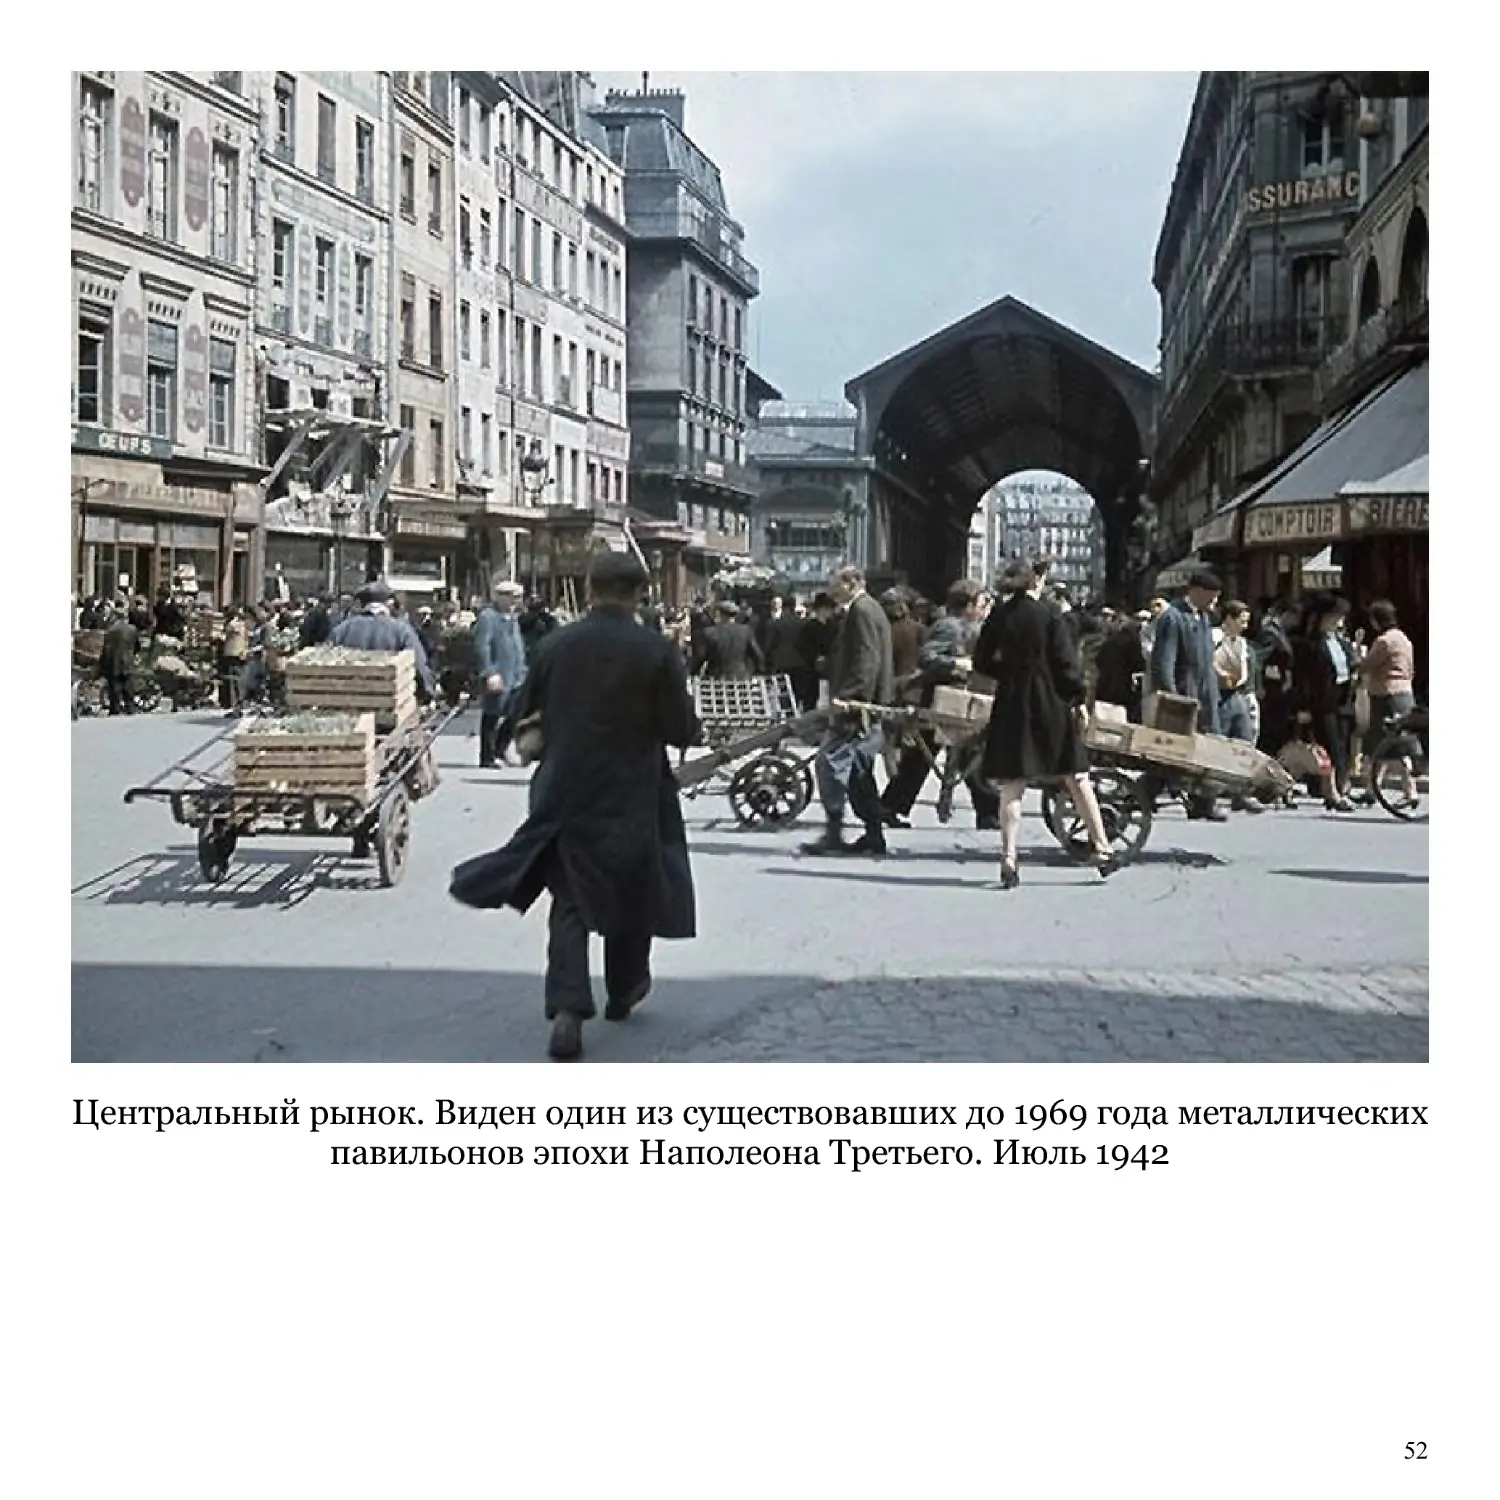 Центральный рынок. Виден один из существовавших до 1969 года металлических павильонов эпохи Наполеона Третьего. Июль 1942